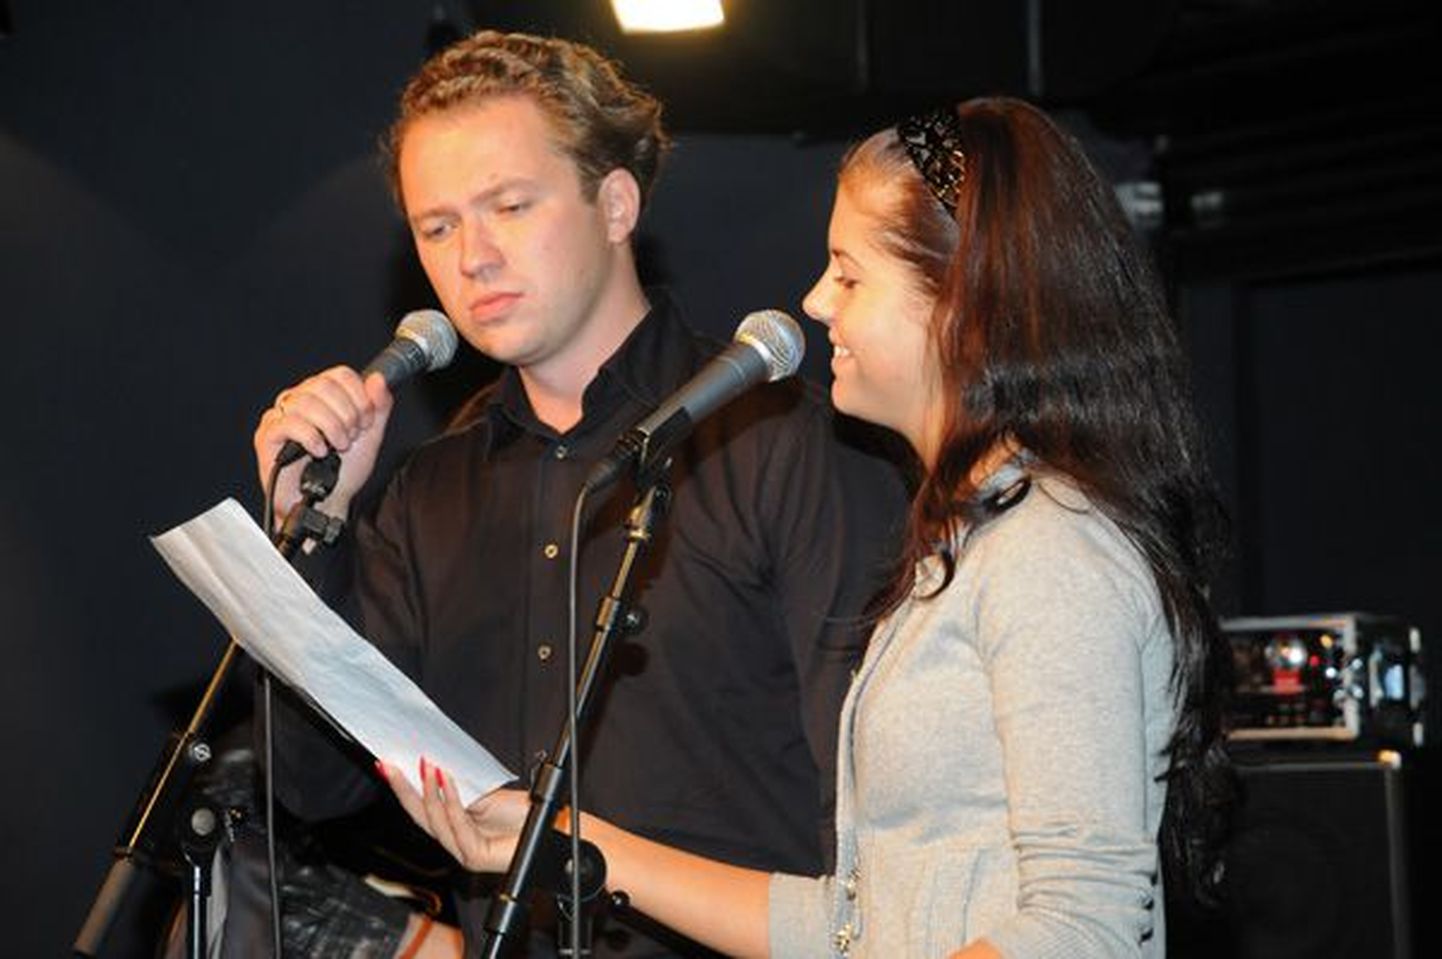 "Laulud tähtedega" proovis: Margus Tsahkna ja Birgit Õigemeel, 16.10.2008